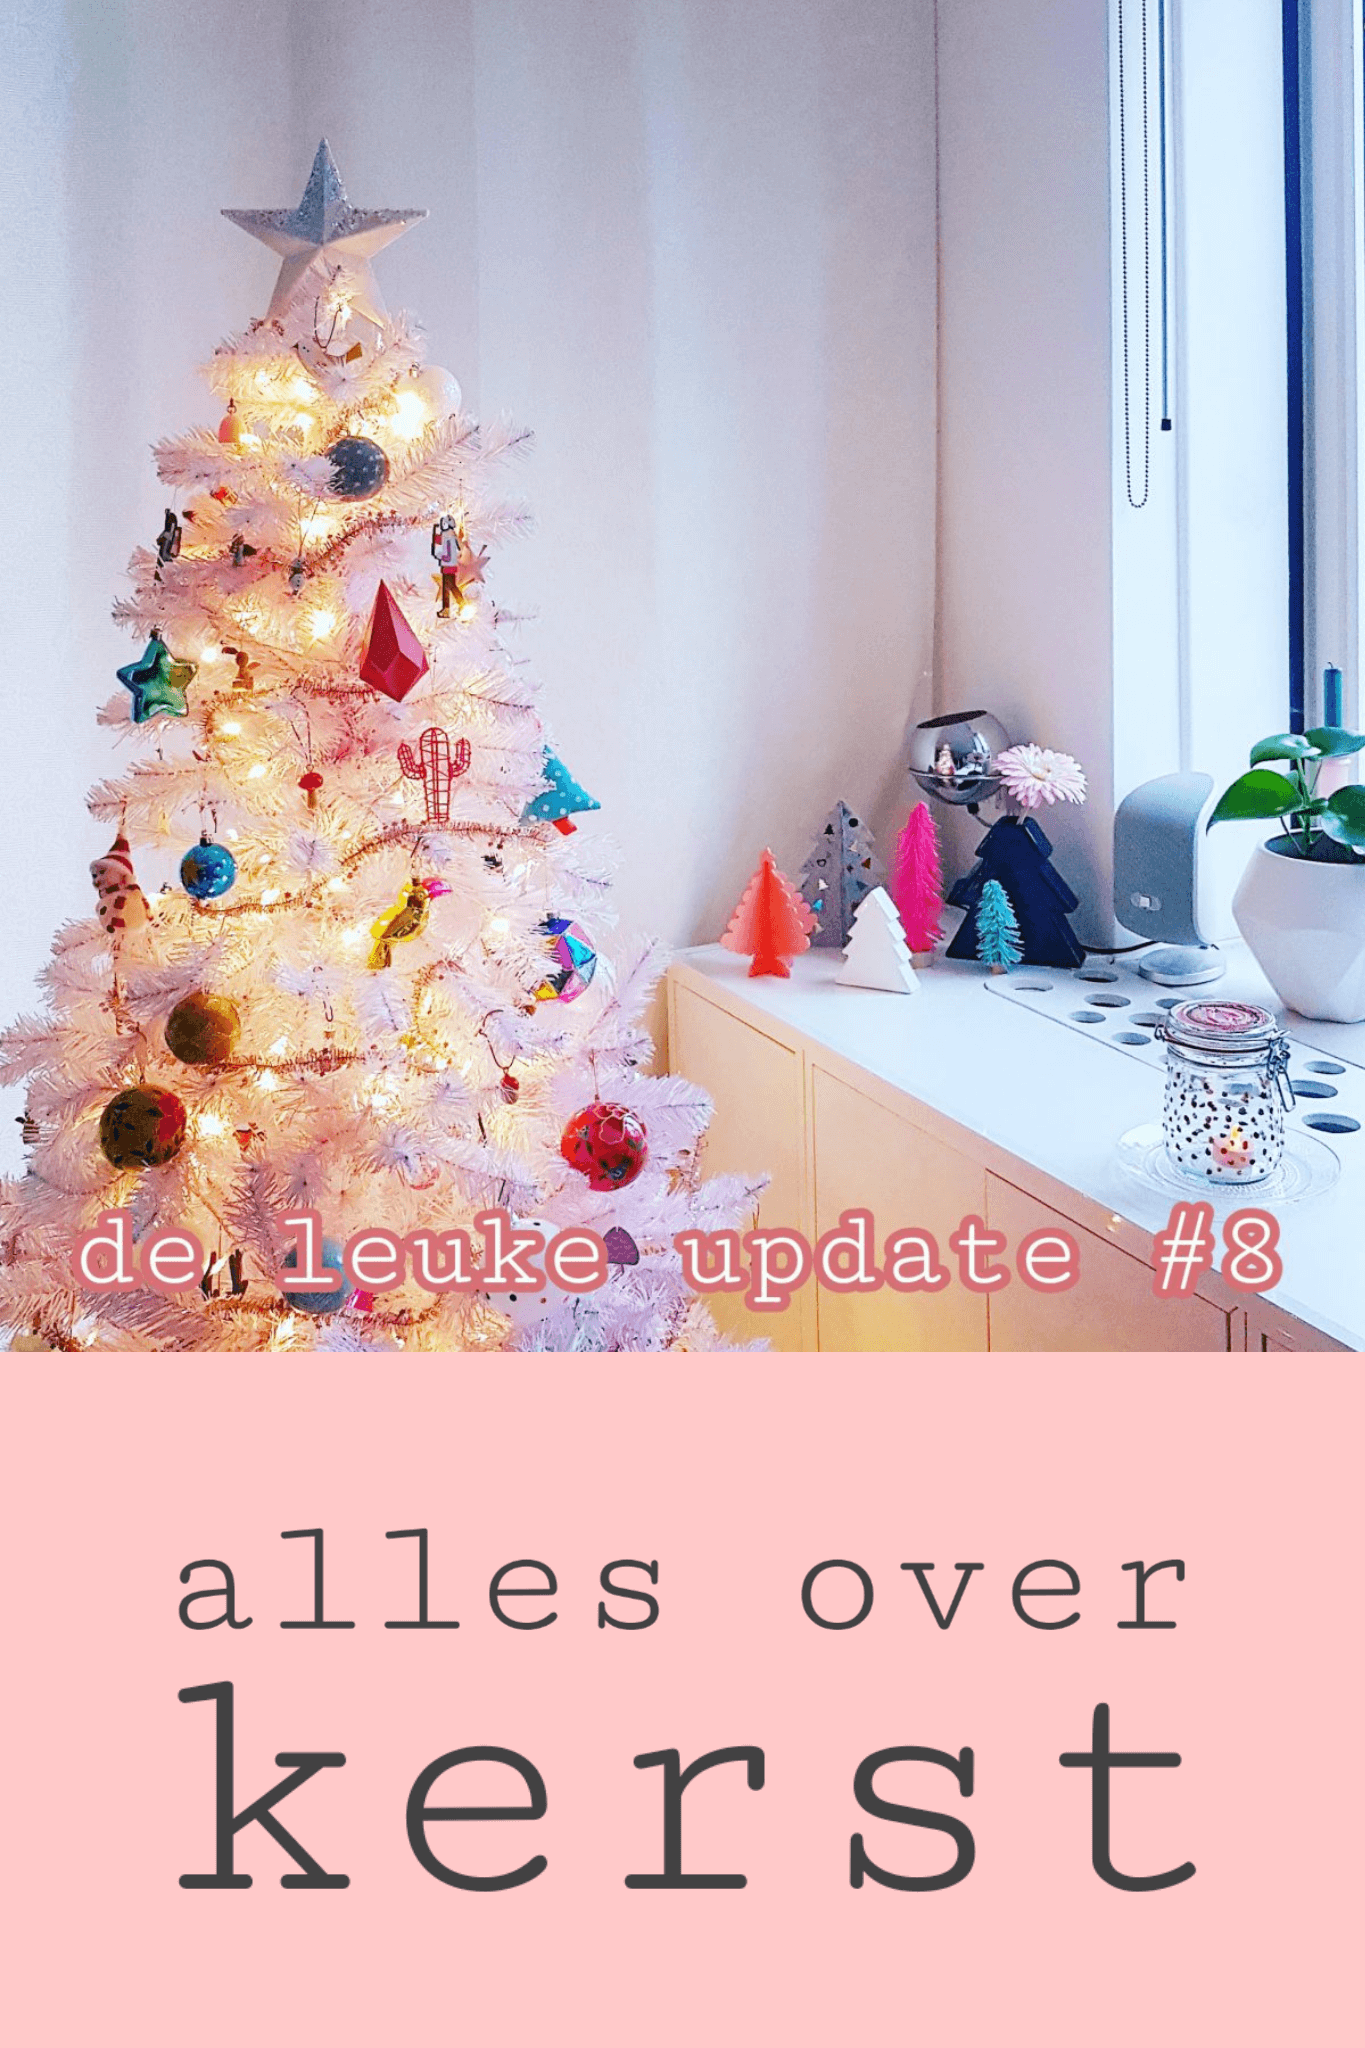 De Leuke Update #8 | Alles over kerst & heel veel kids uitjes